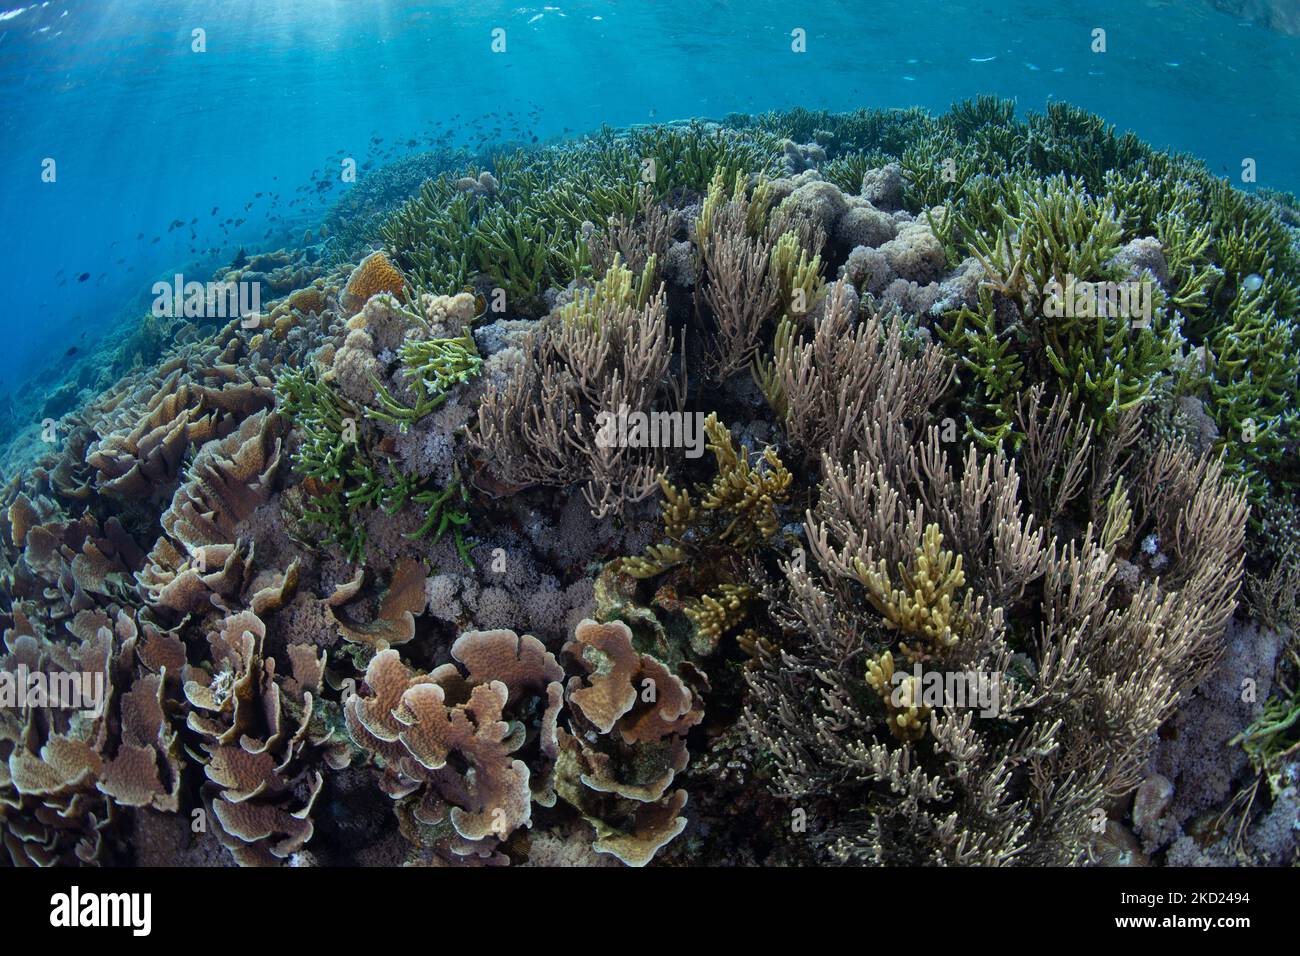 Auf einem flachen, gesunden Riff in der Nähe von Komodo, Indonesien, konkurrieren verschiedene Korallen um Platz. Dieses tropische Gebiet enthält eine hohe marine Artenvielfalt. Stockfoto